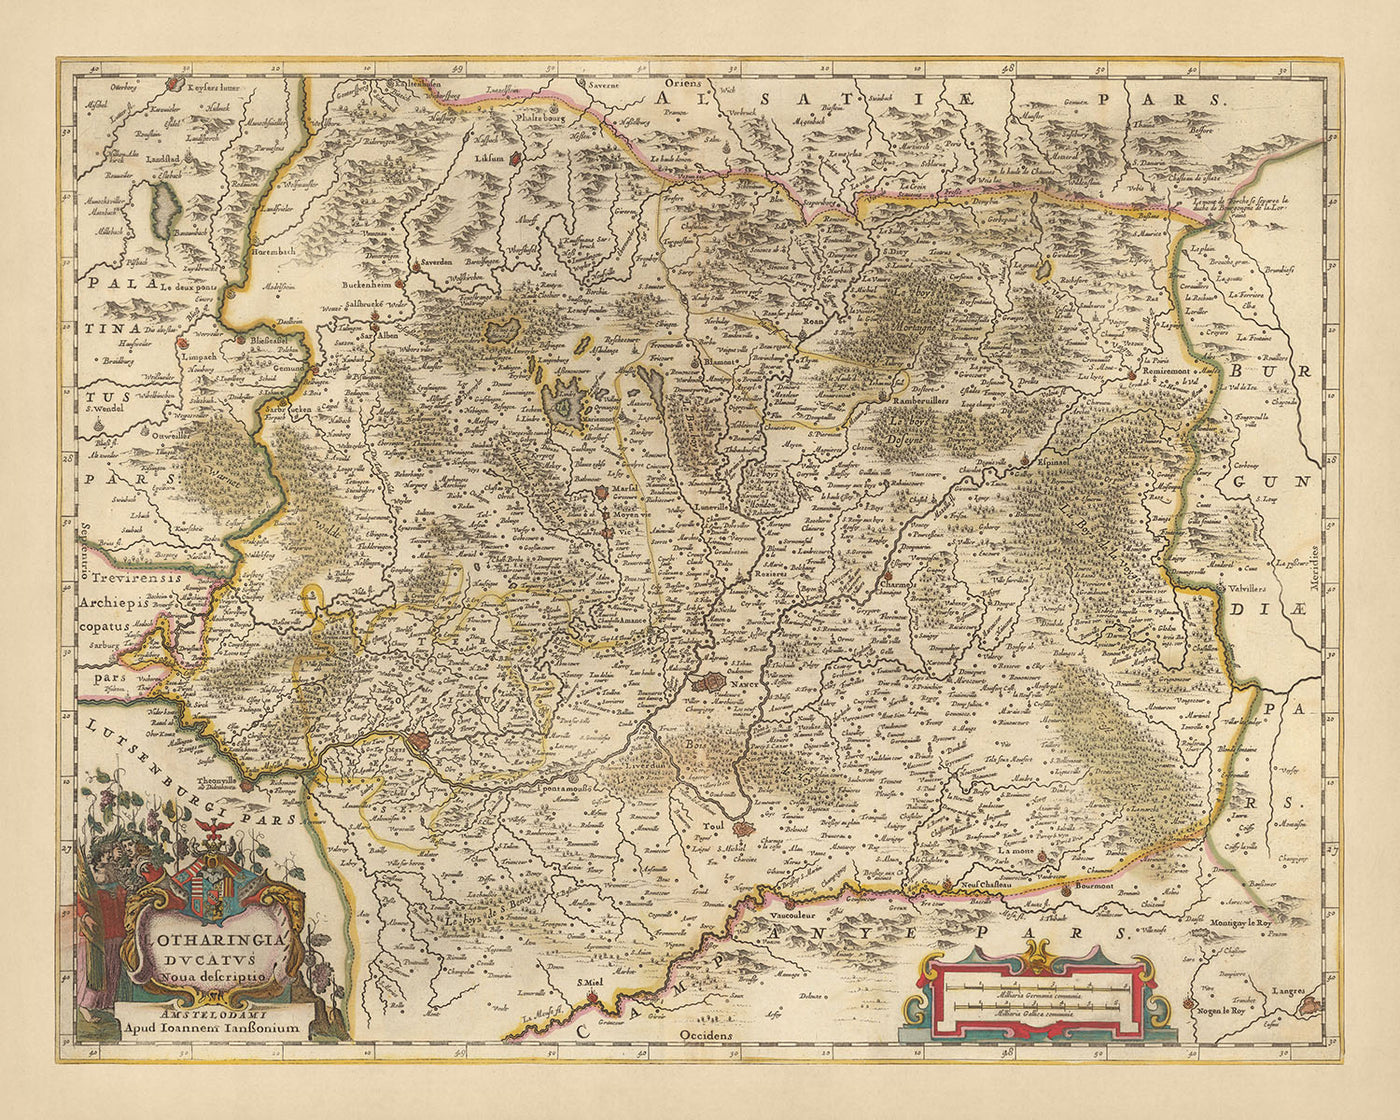 Old Map of Duchy of Lorraine, France by Visscher, 1690: Nancy, Metz, Saarbrücken, Kaiserslauten, Northern Vosges Park